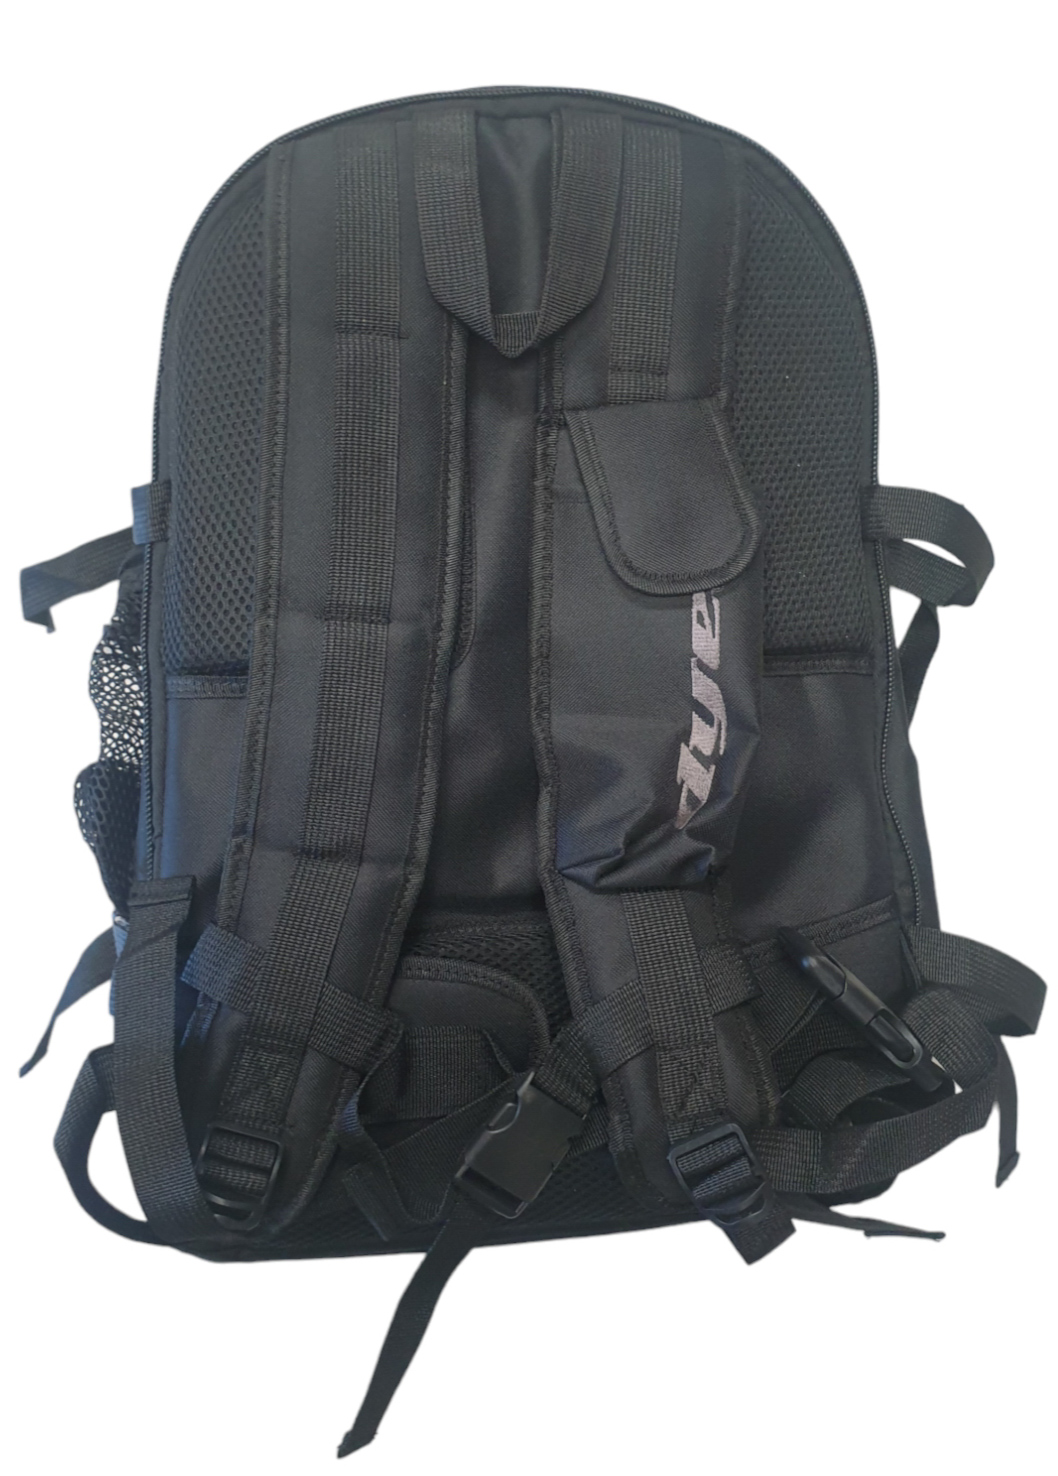 DYE Backpack, Black - USED